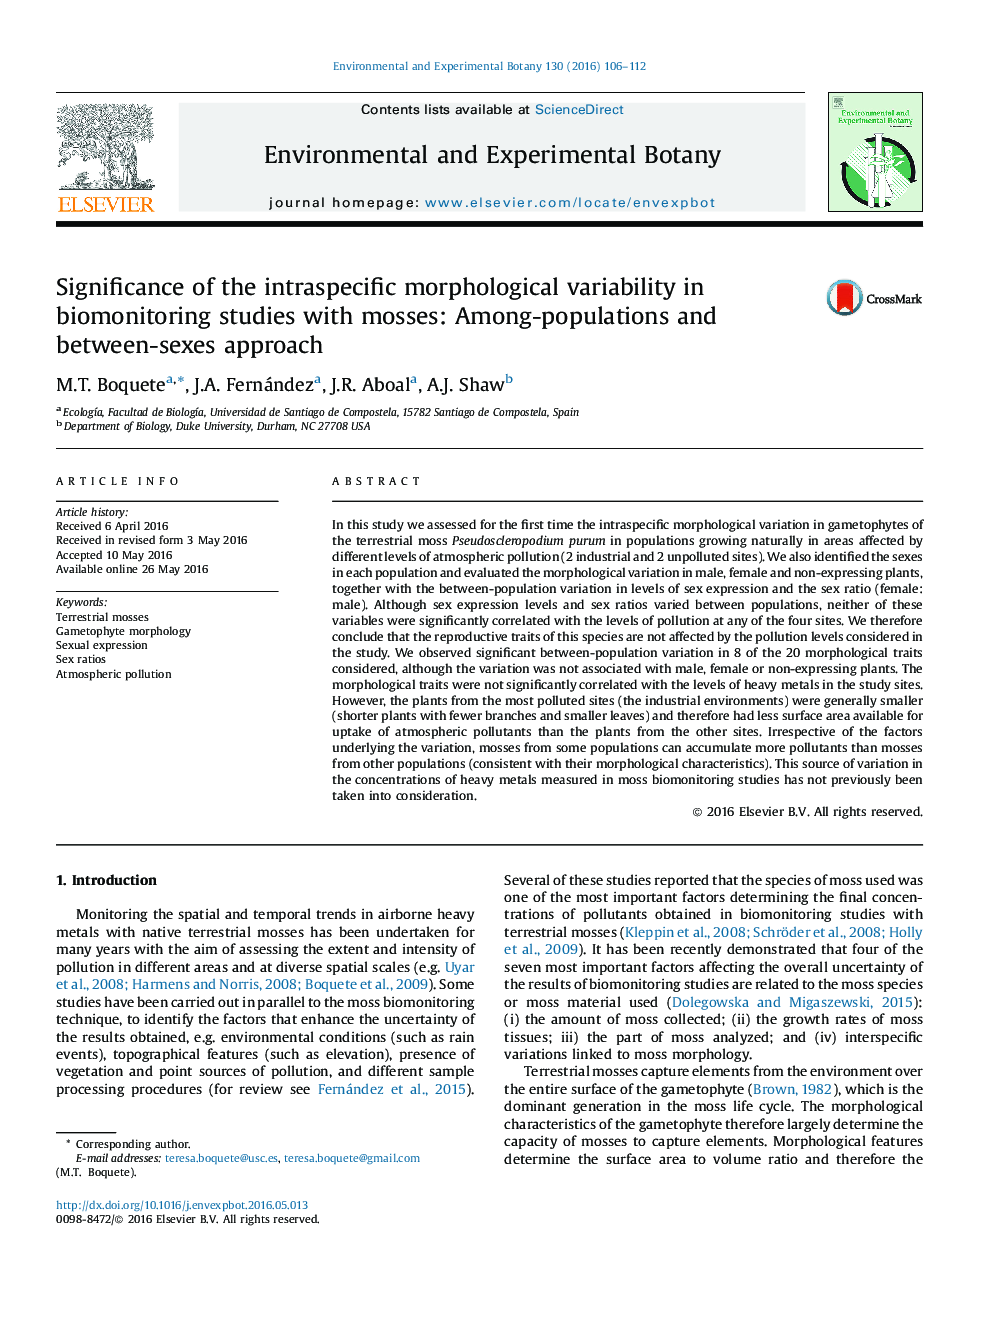 اهمیت تنوع مورفولوژیکی درون گونه ای در مطالعات بیومونیزه شدن با قارچ: بین جمعیت و رویکرد بین جنسیت 